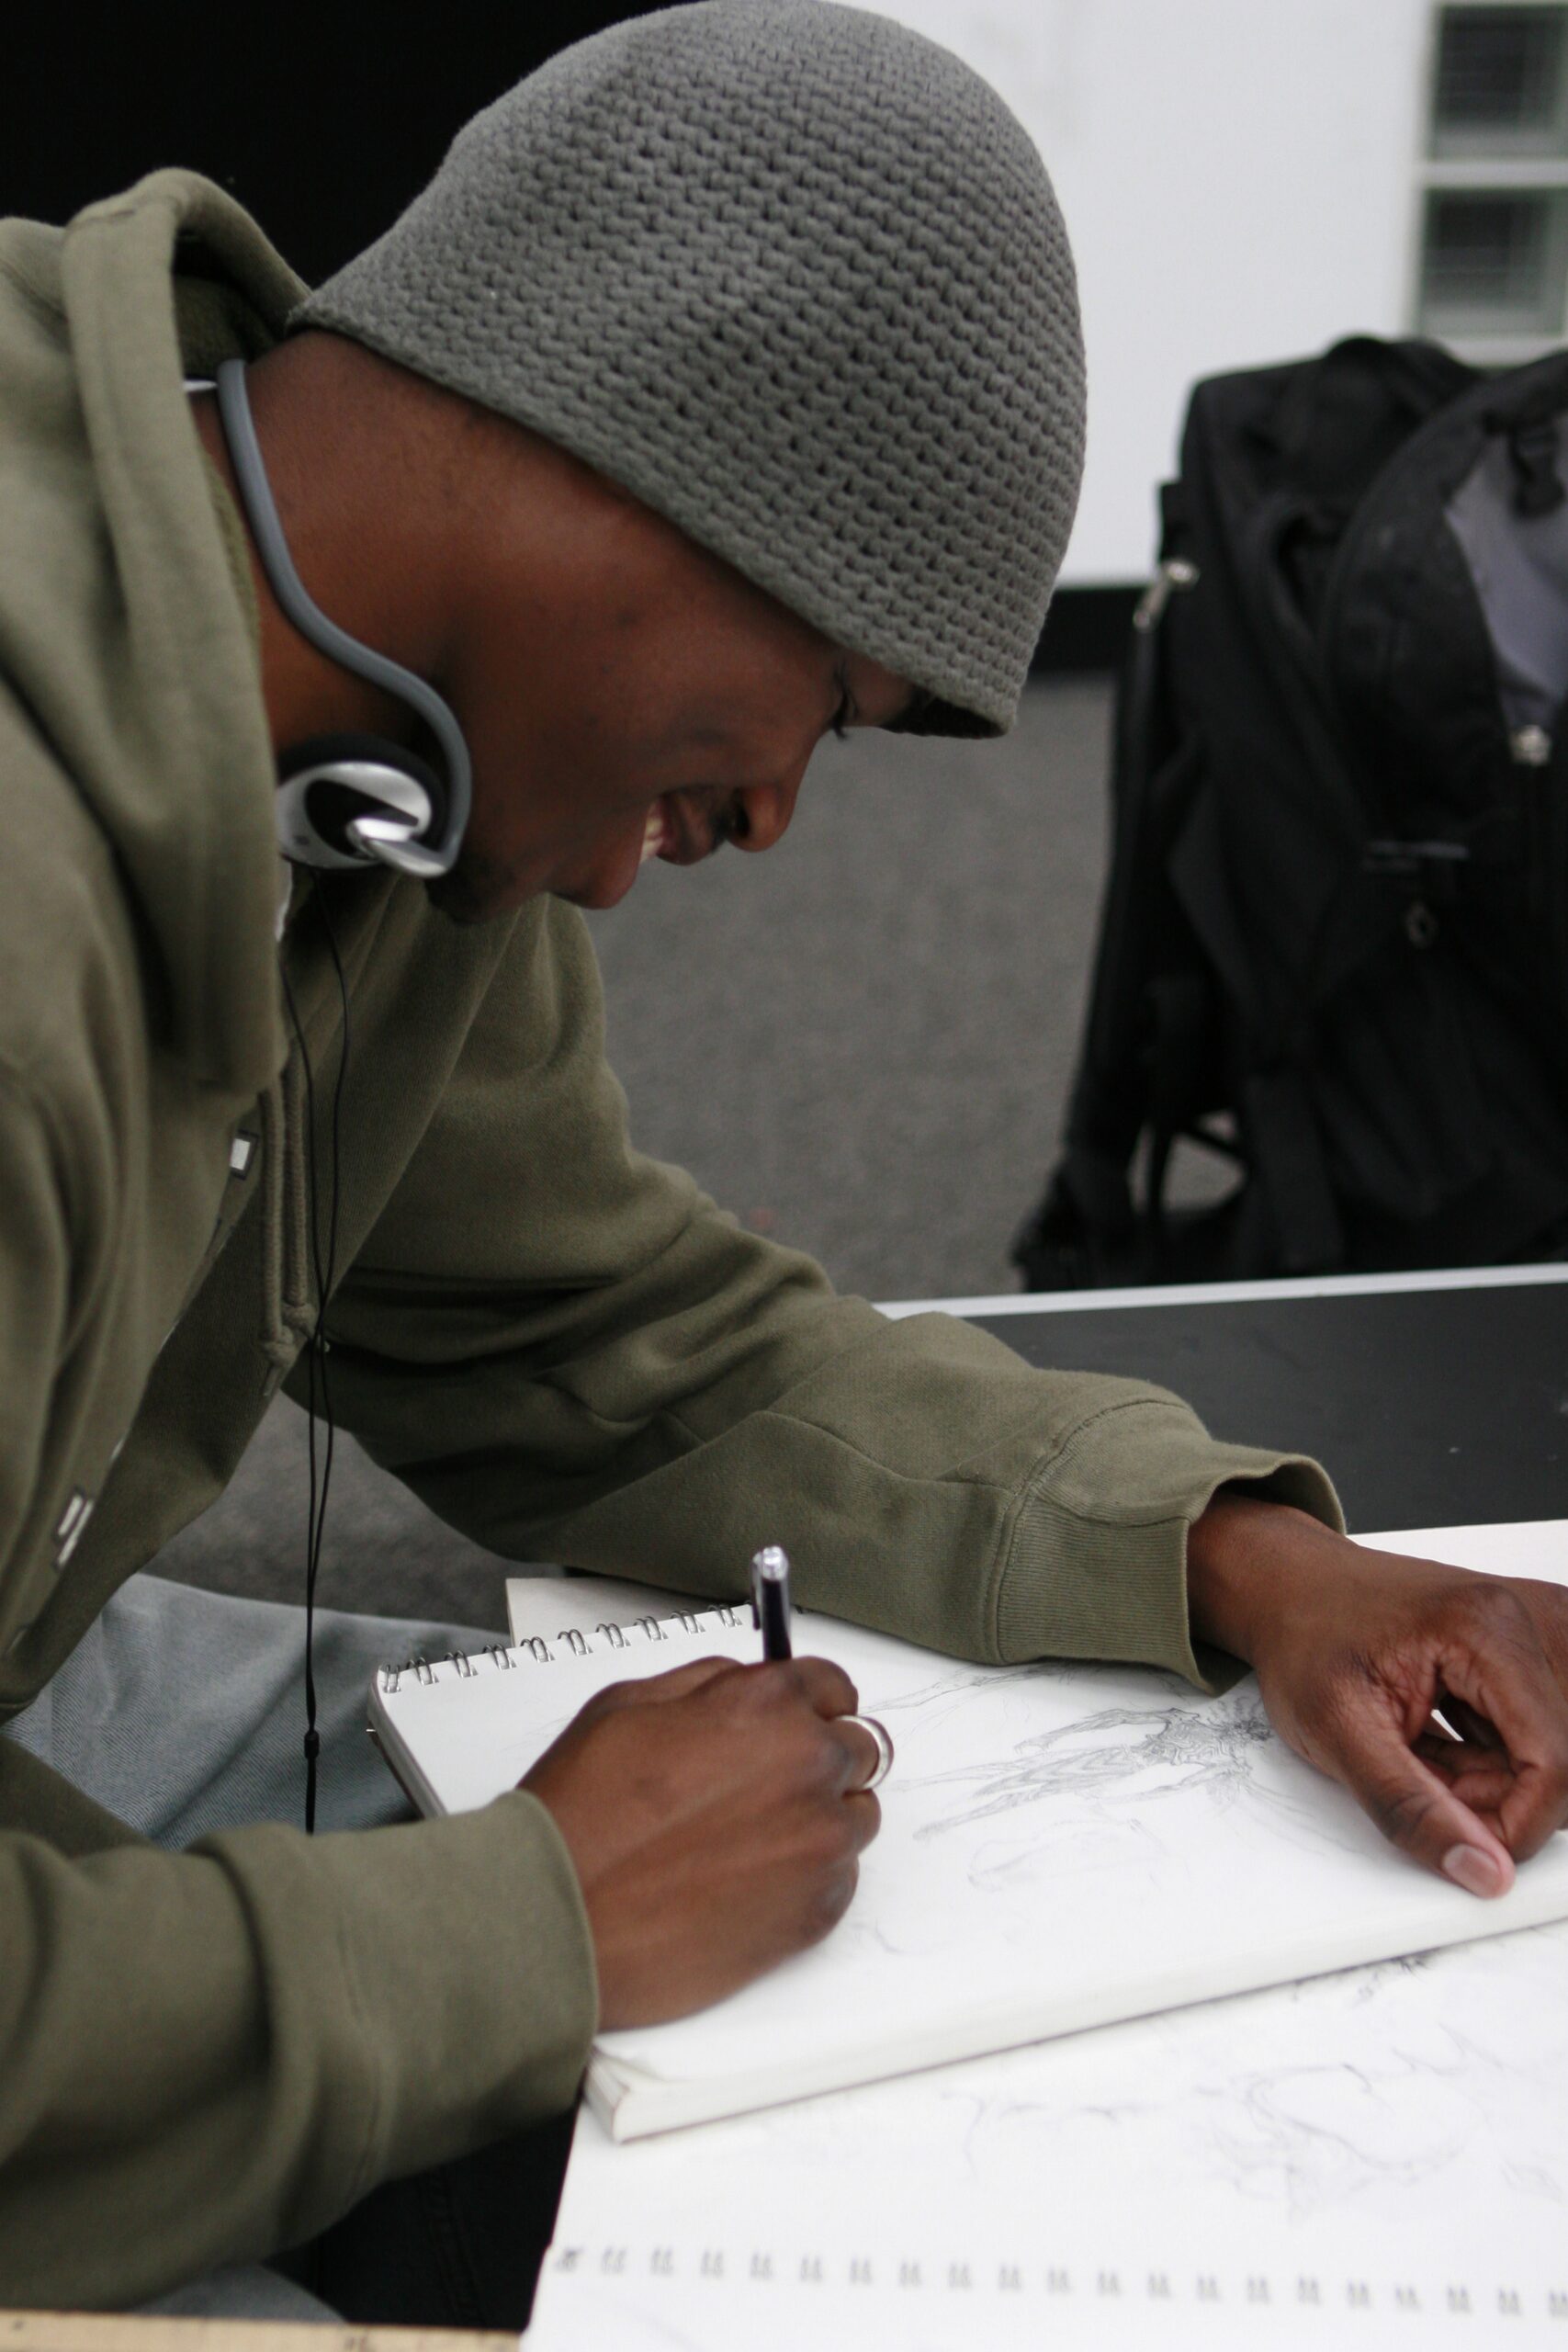 An artist draws in their sketchbook wearing a beanie